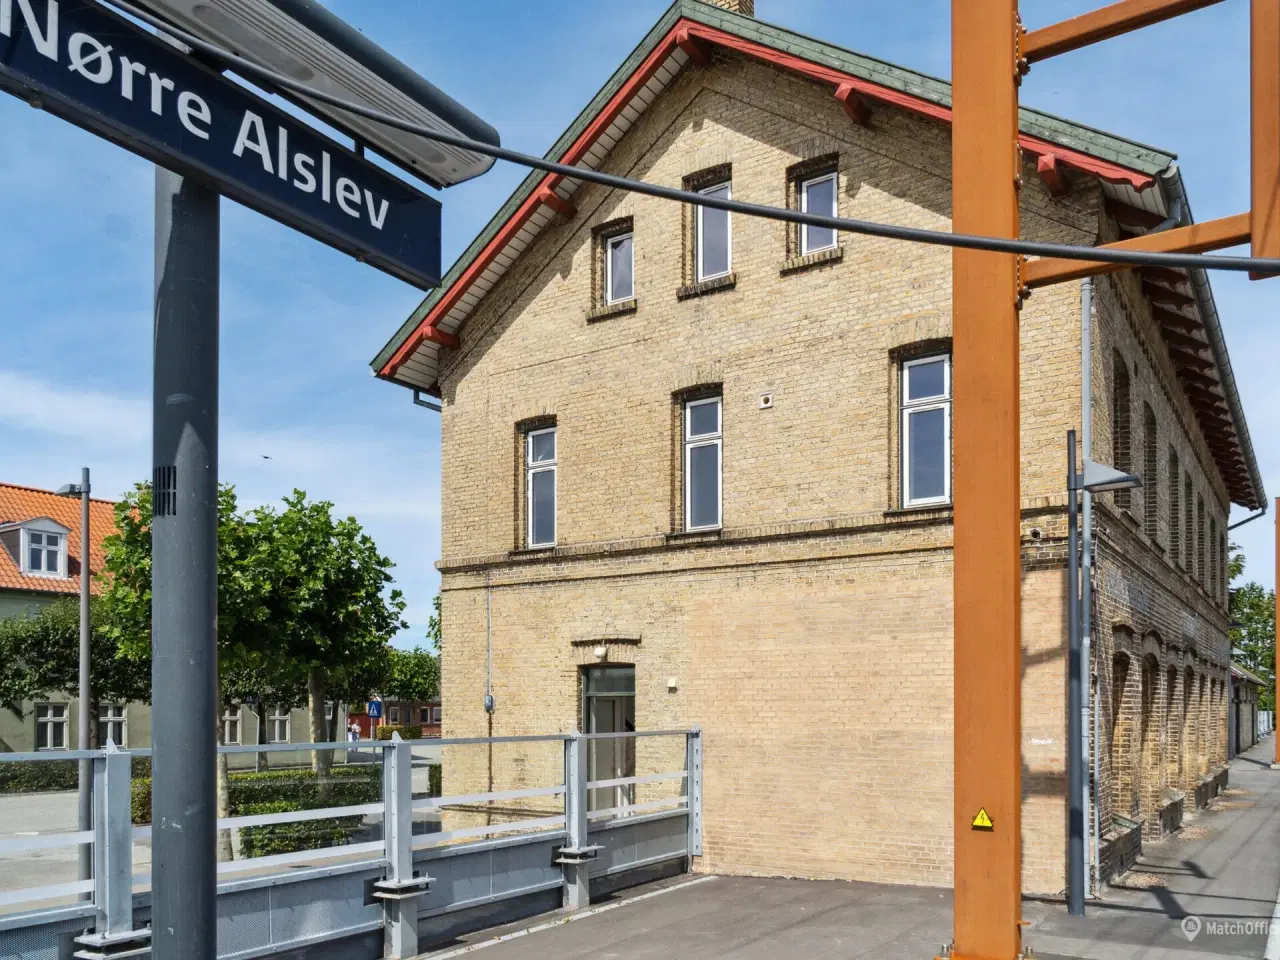 Billede 9 - Nyt liv på Nørre Alslev station.; har du ideen?